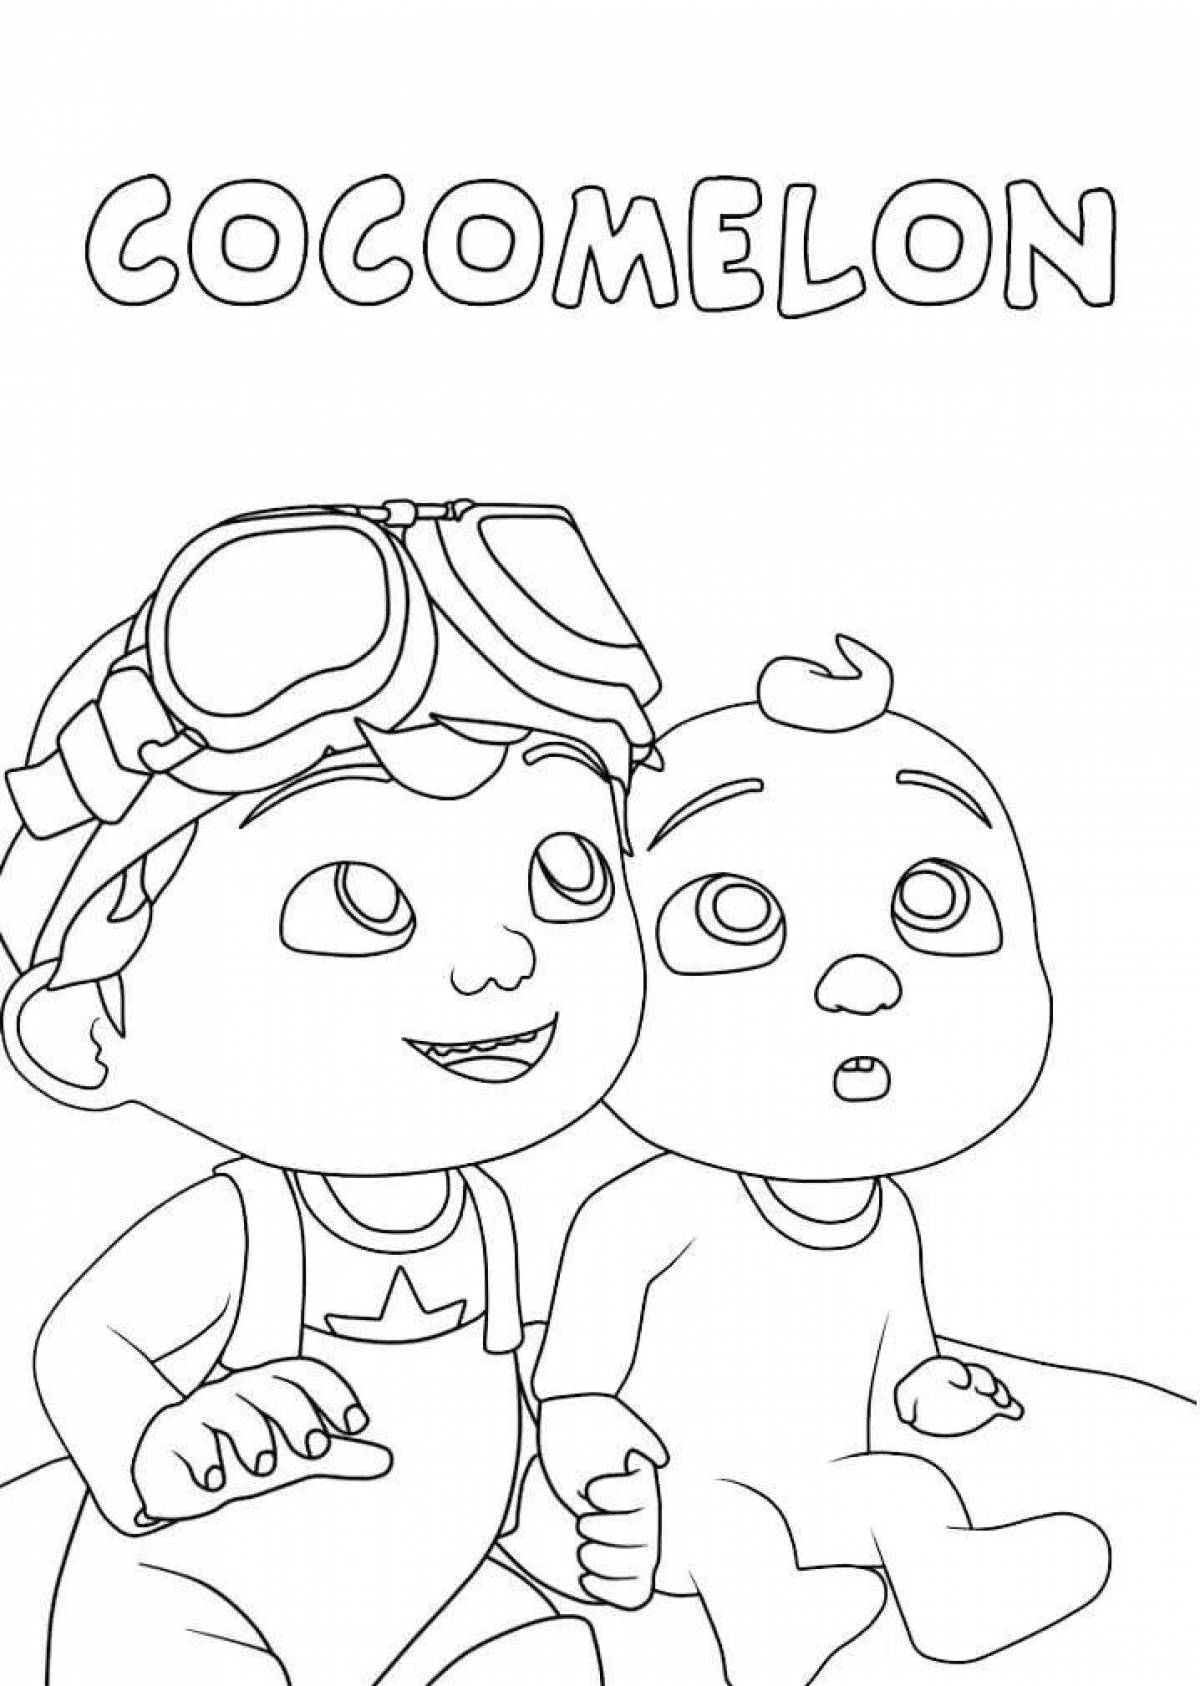 Cocomelone fun coloring